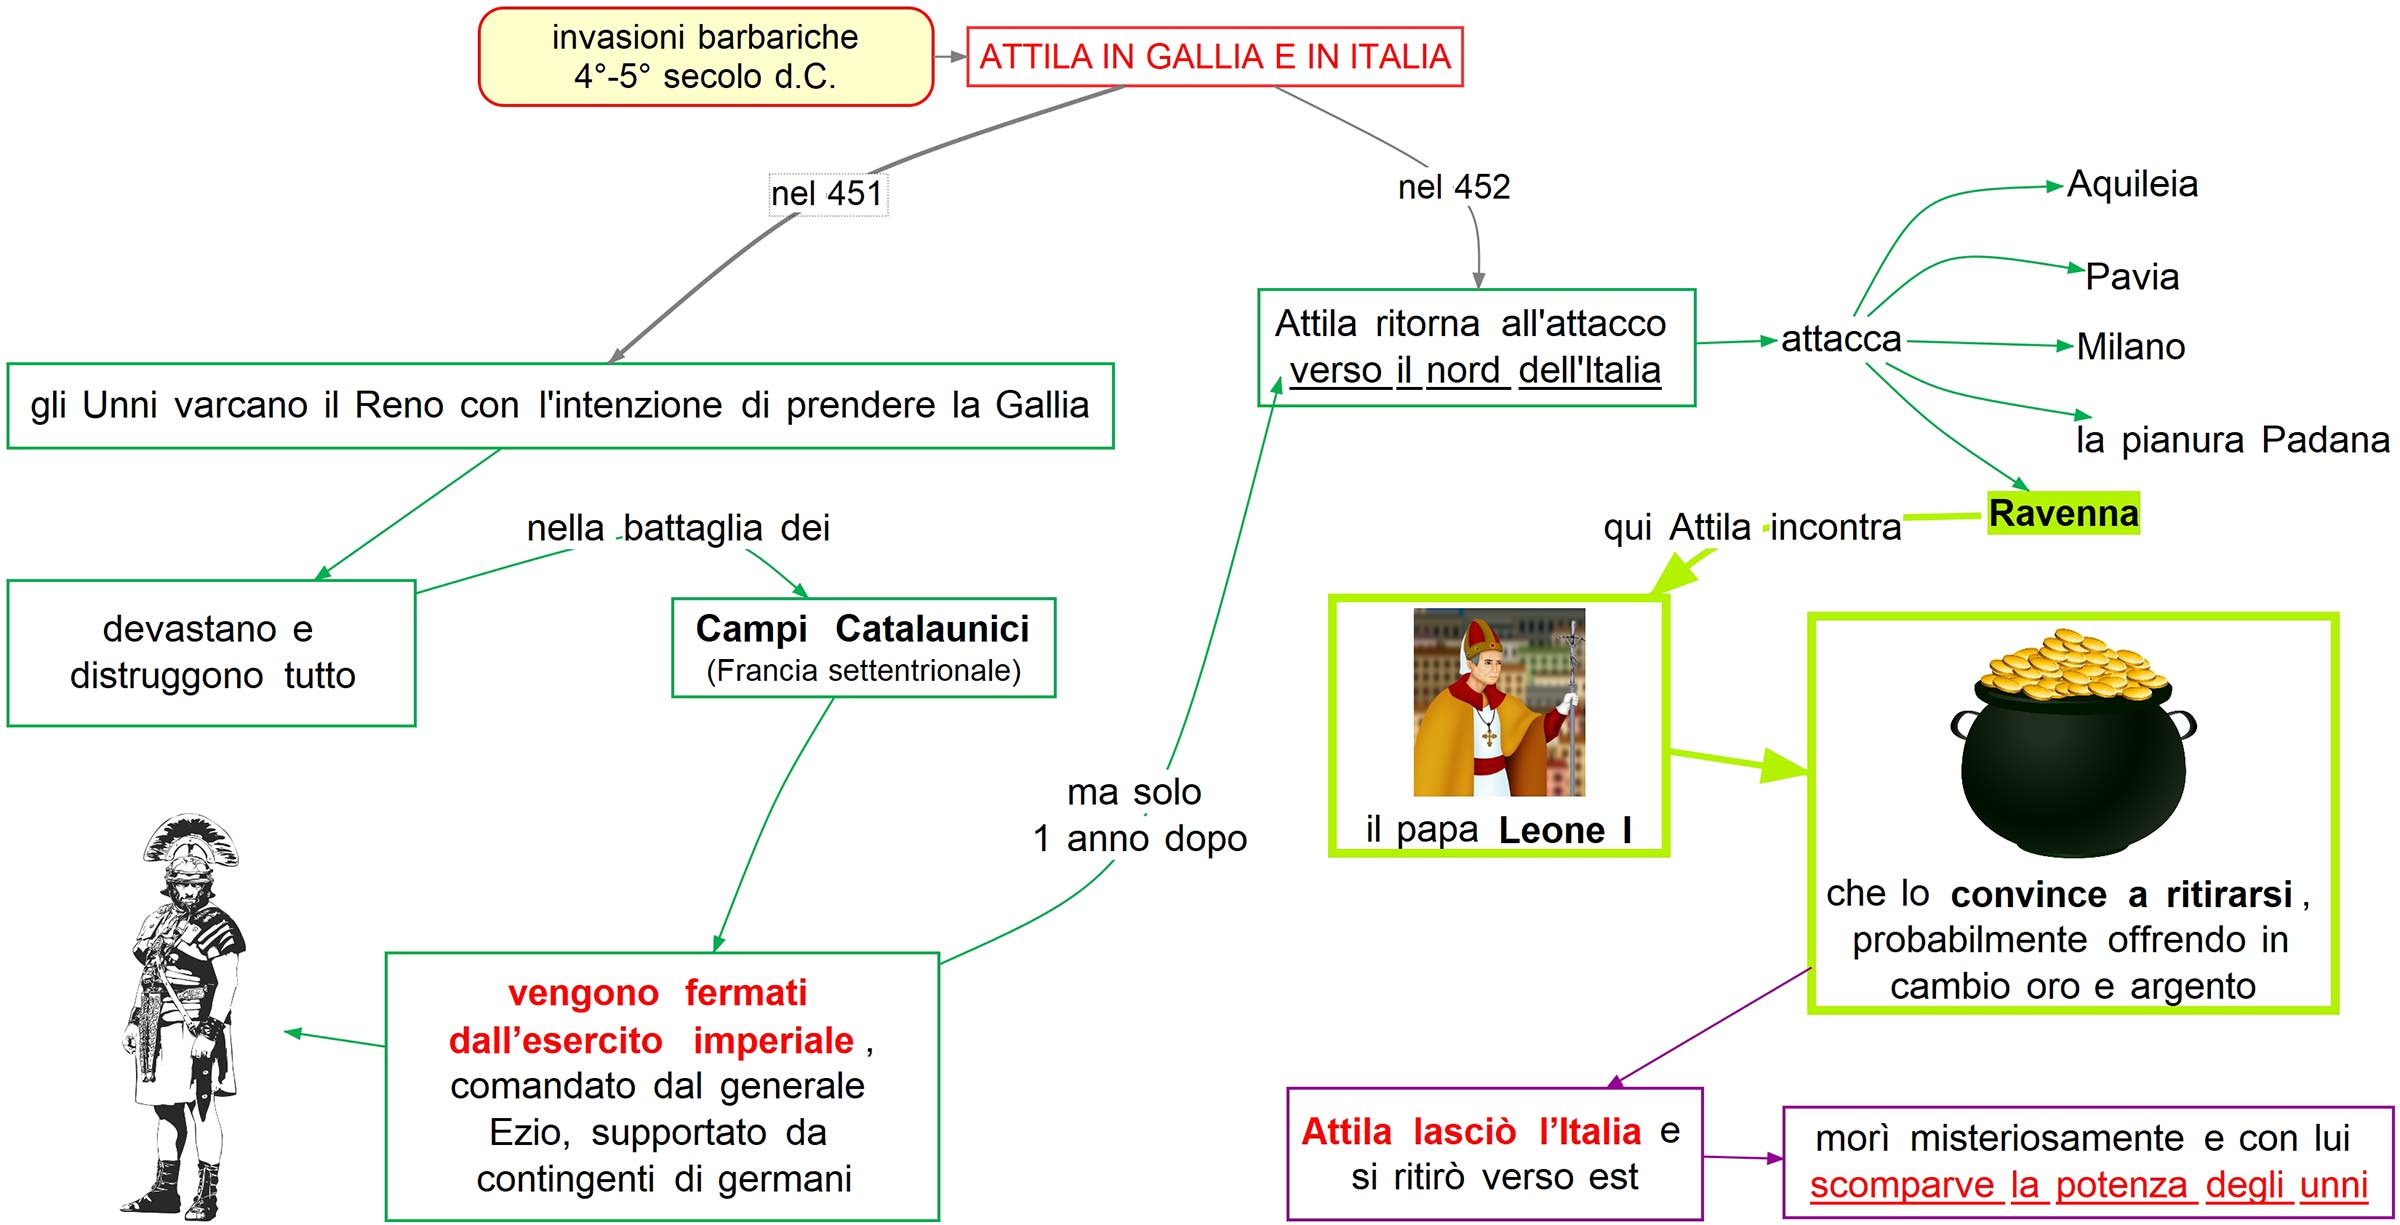 Attila in Gallia e in Italia